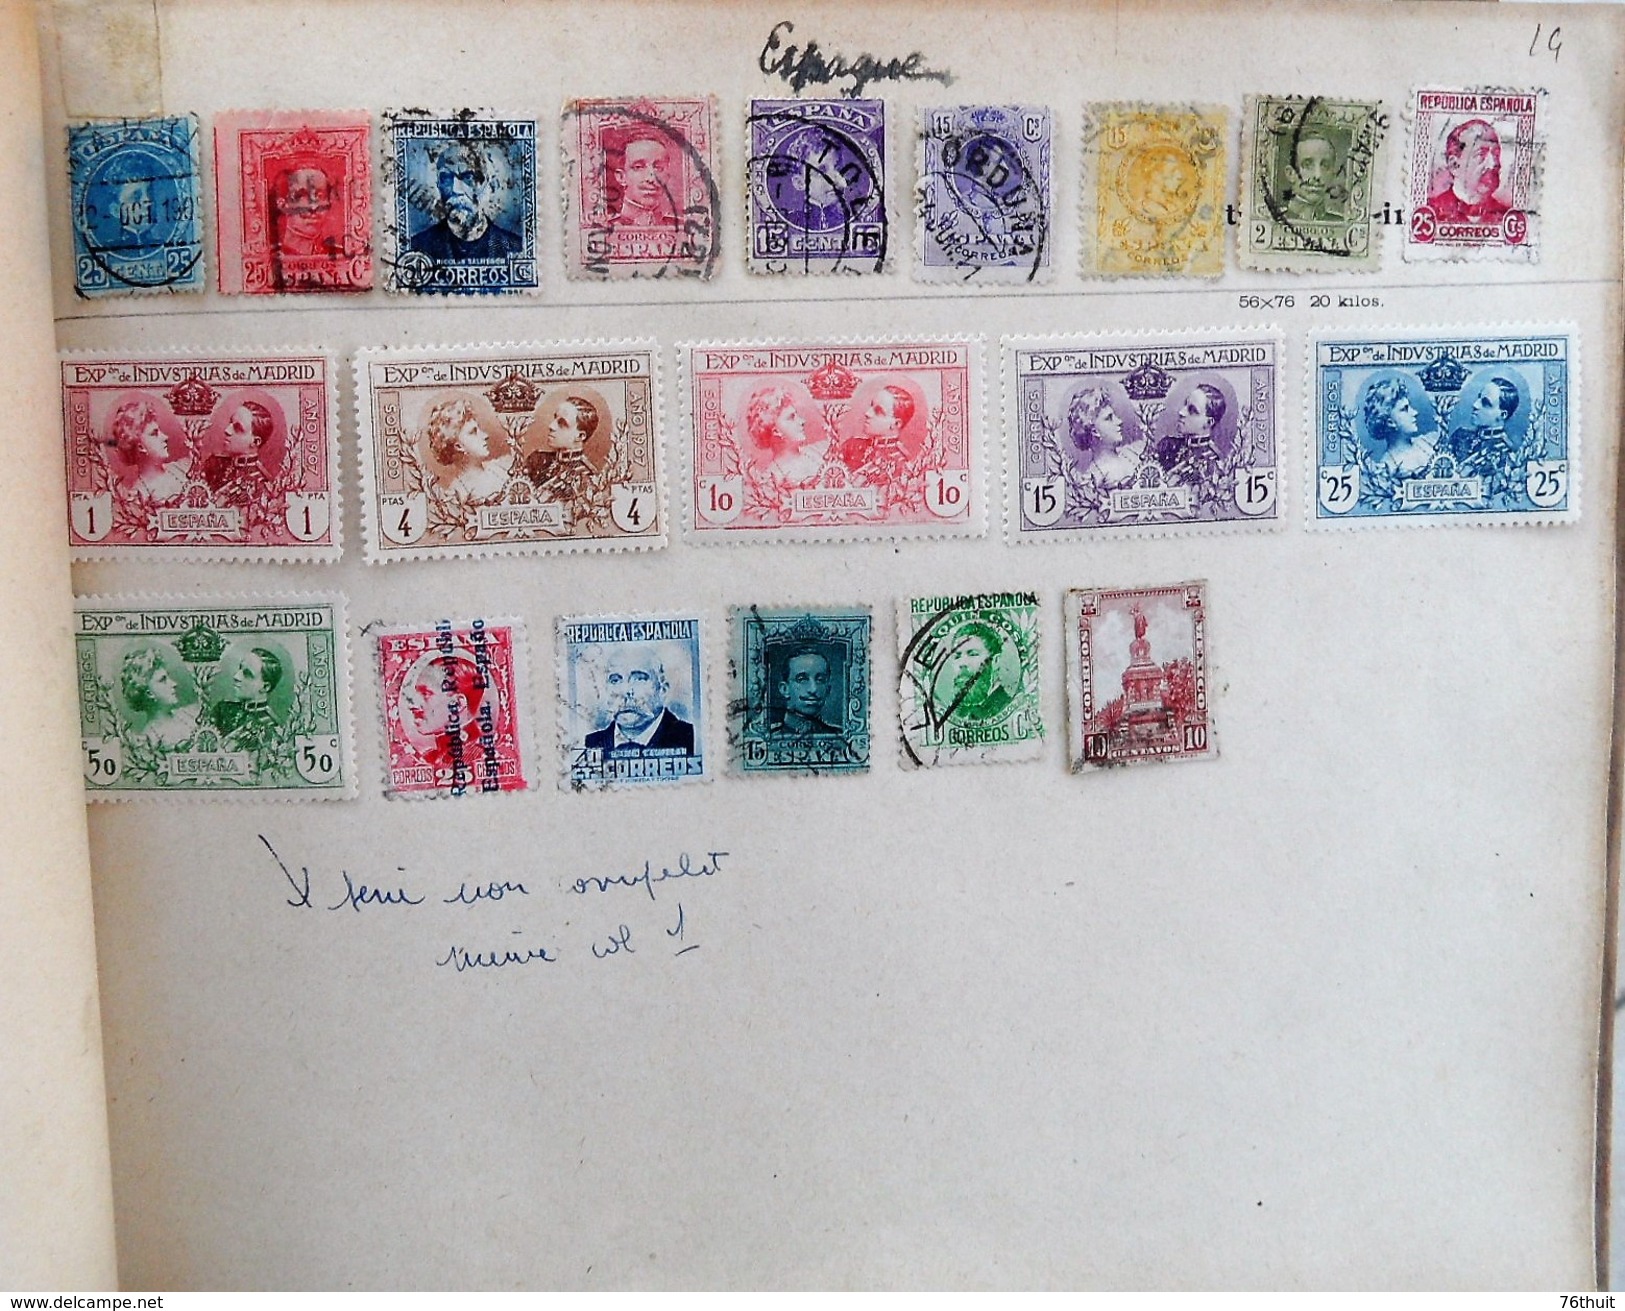 Album de timbres poste fait main - Timbres oblitérés avec charnière, voire collés - 860 timbres environ - tous pays